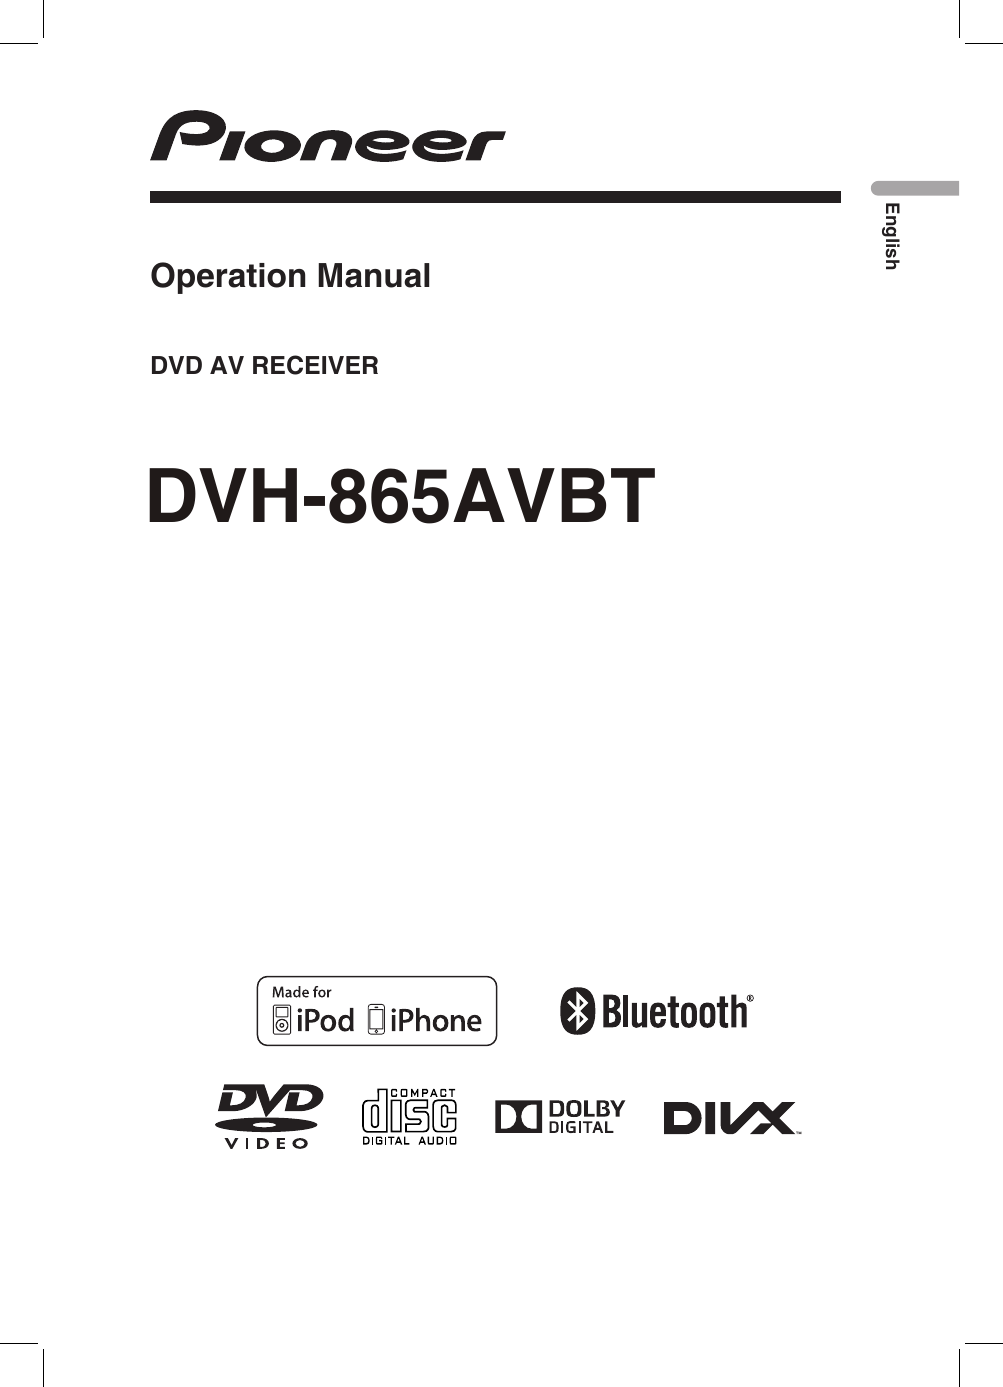 DVH-865AVBTEnglishDVD AV RECEIVEROperation Manual